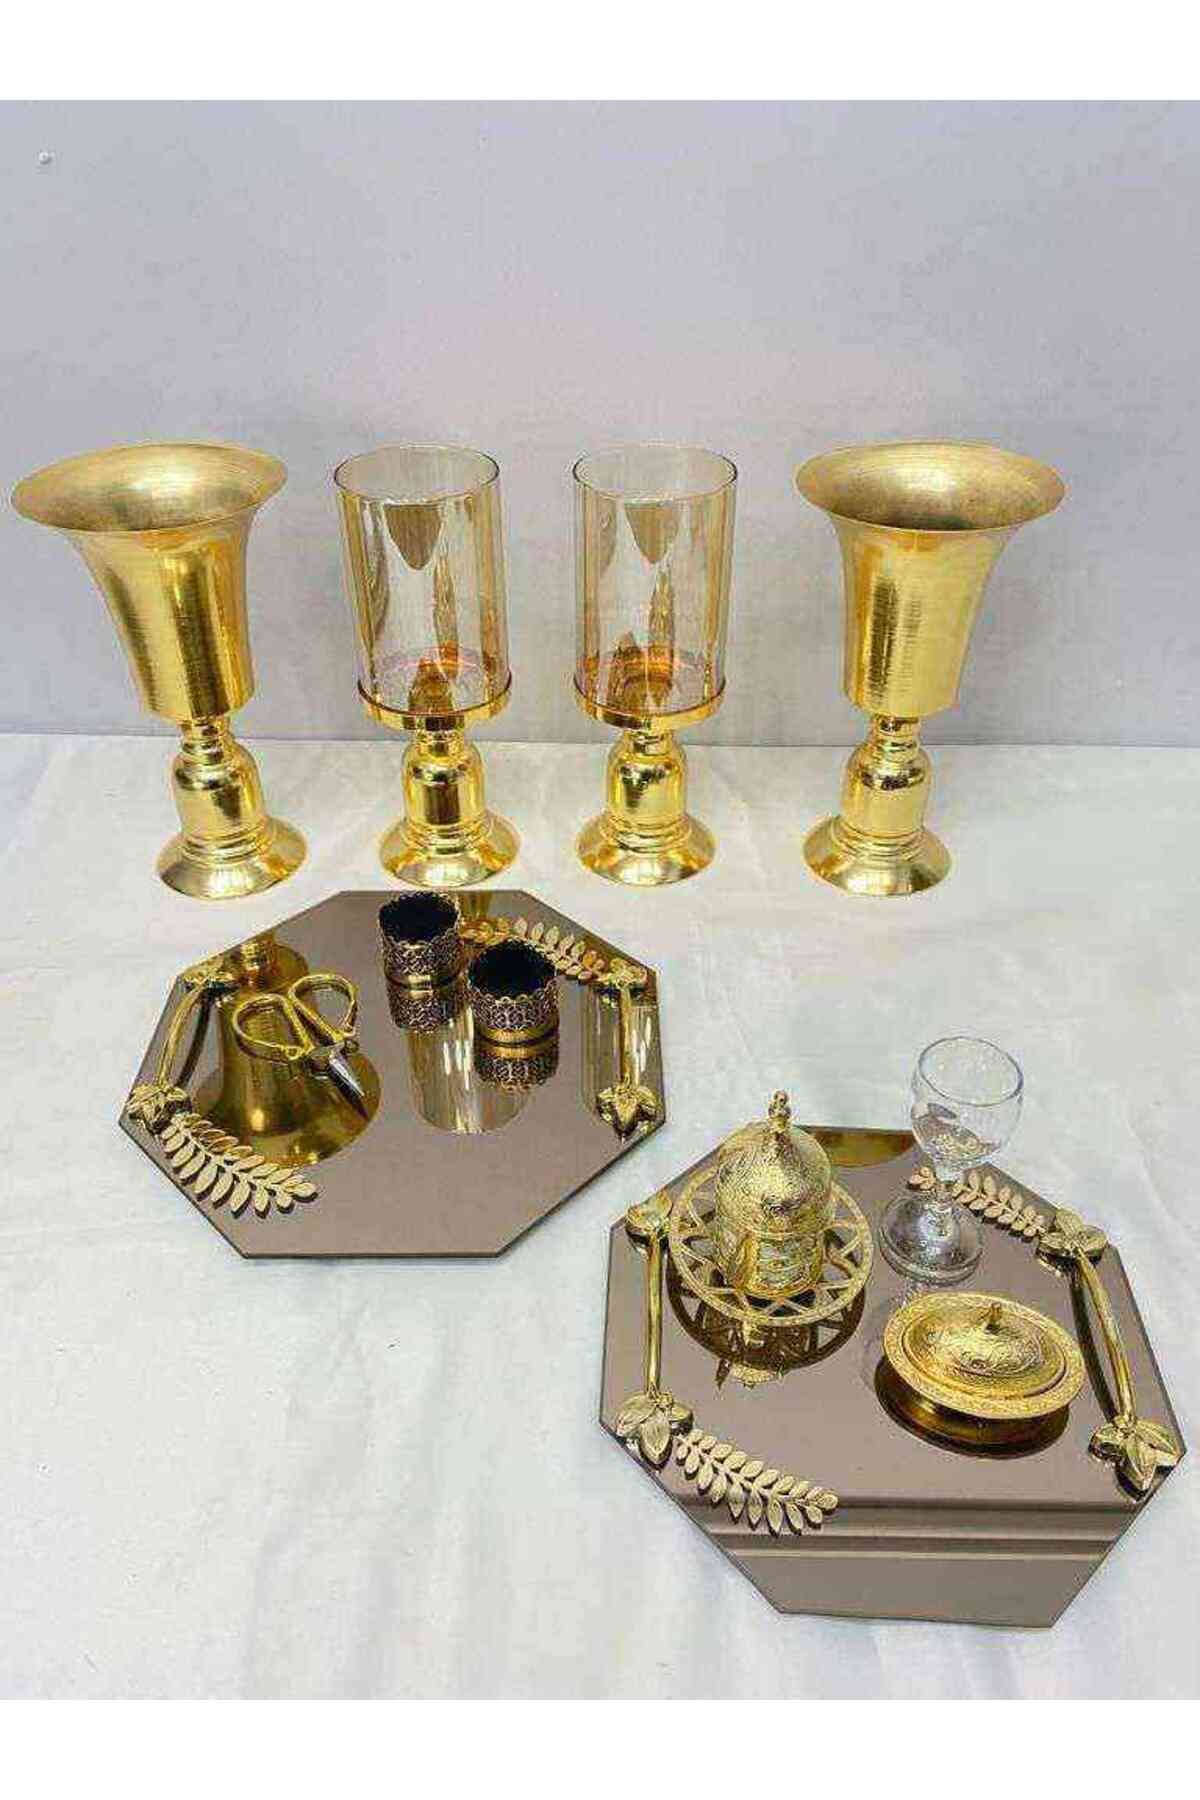 RetroLazer Yüzük Tepsisi Ve Damat Kahvesi Ikili Set Tepsi Vazo Şamdan Gold Nişan Söz